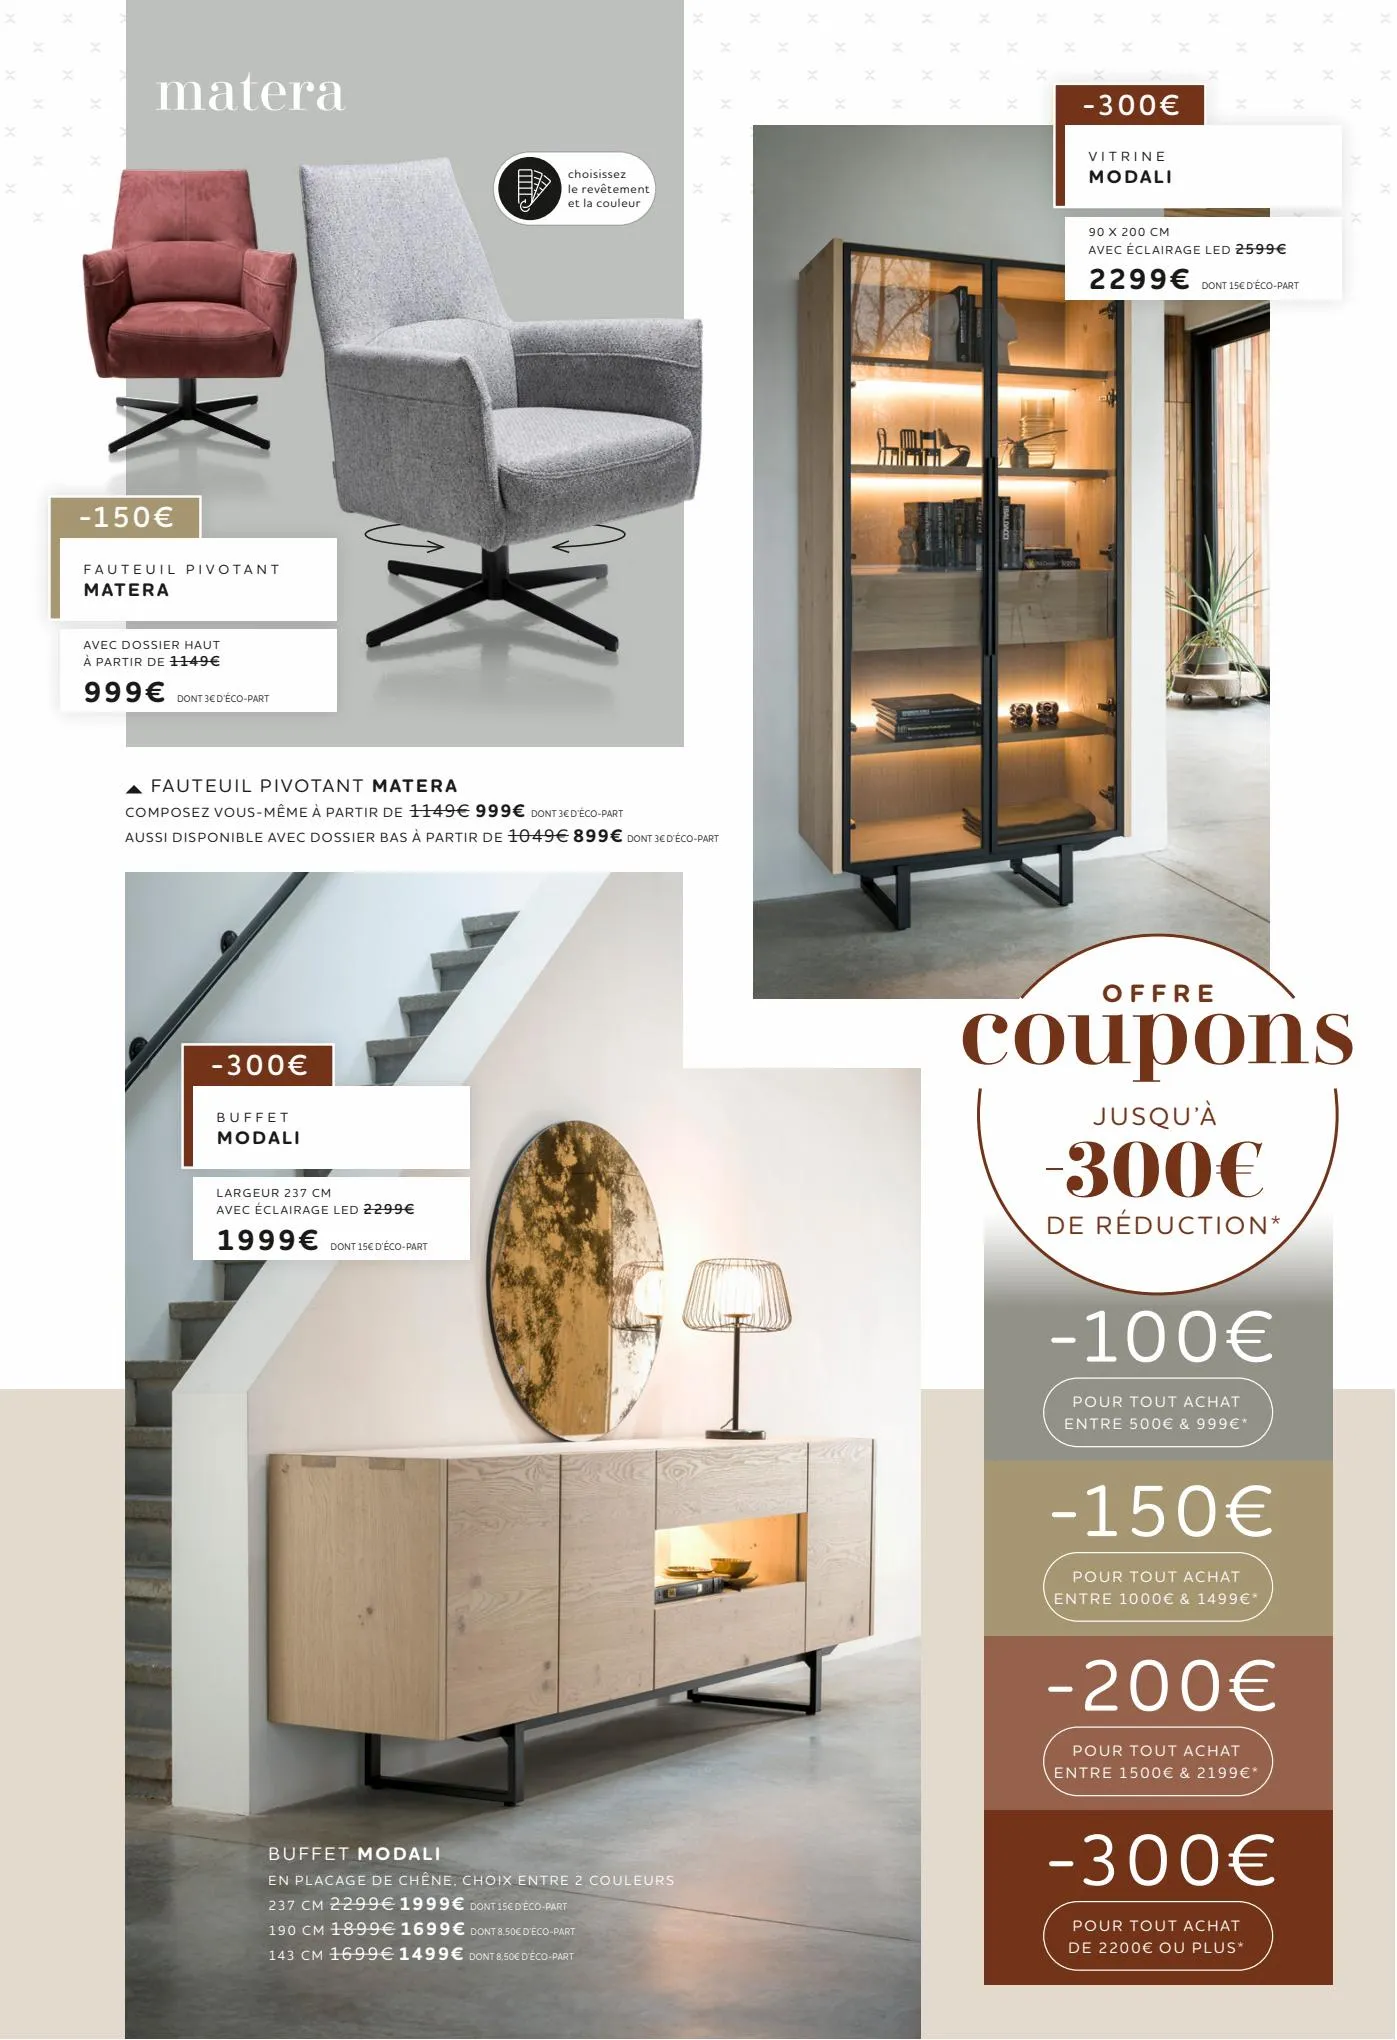 Catalogue Offre coupons JUSQU ’À  -300€  DE RÉDUCTION*, page 00003